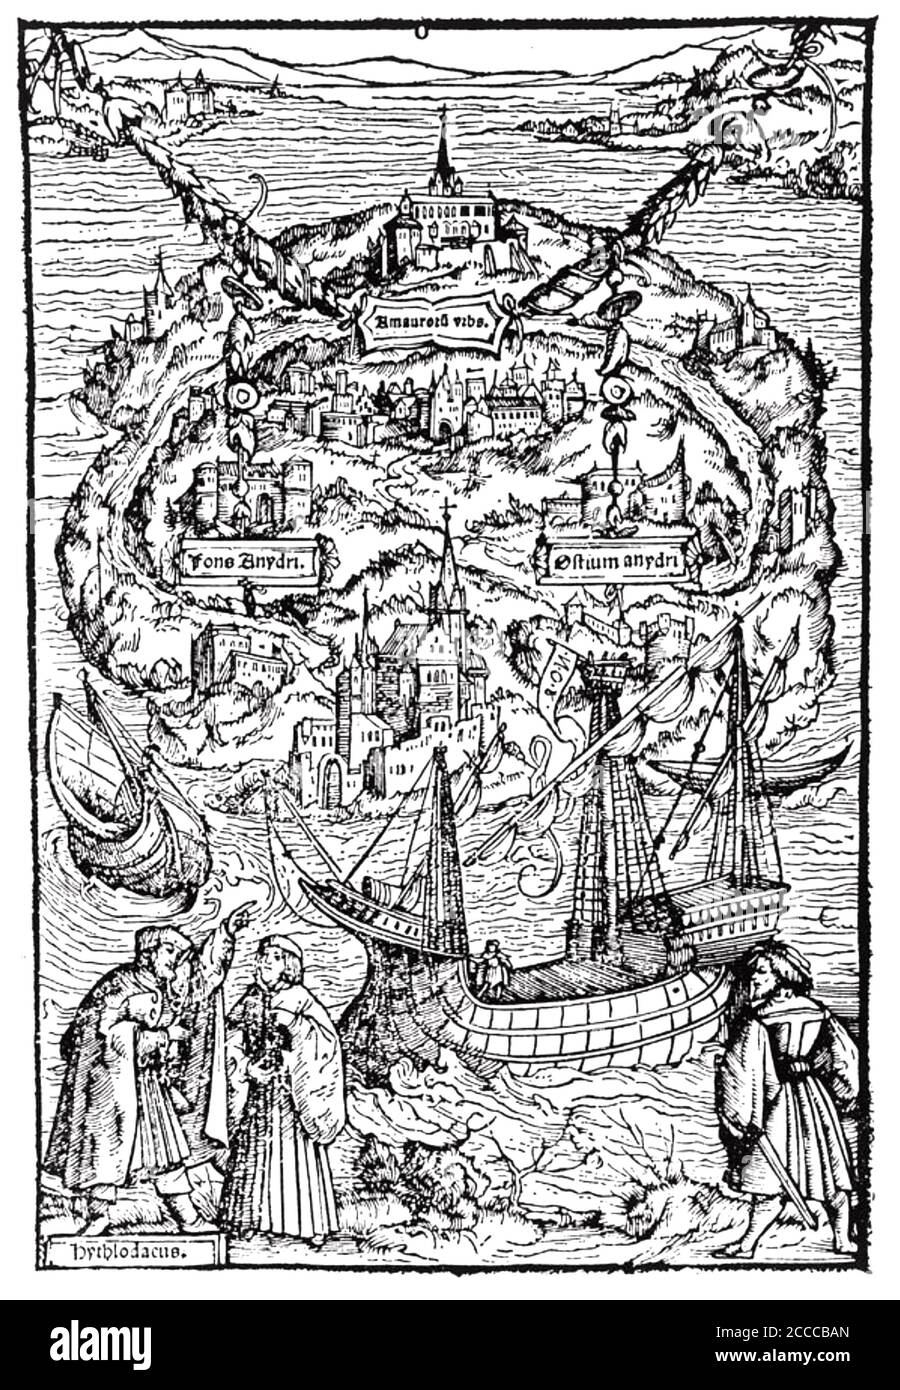 UTOPIA Holzschnitt aus dem Buch von Thomas More von 1516 Stockfoto